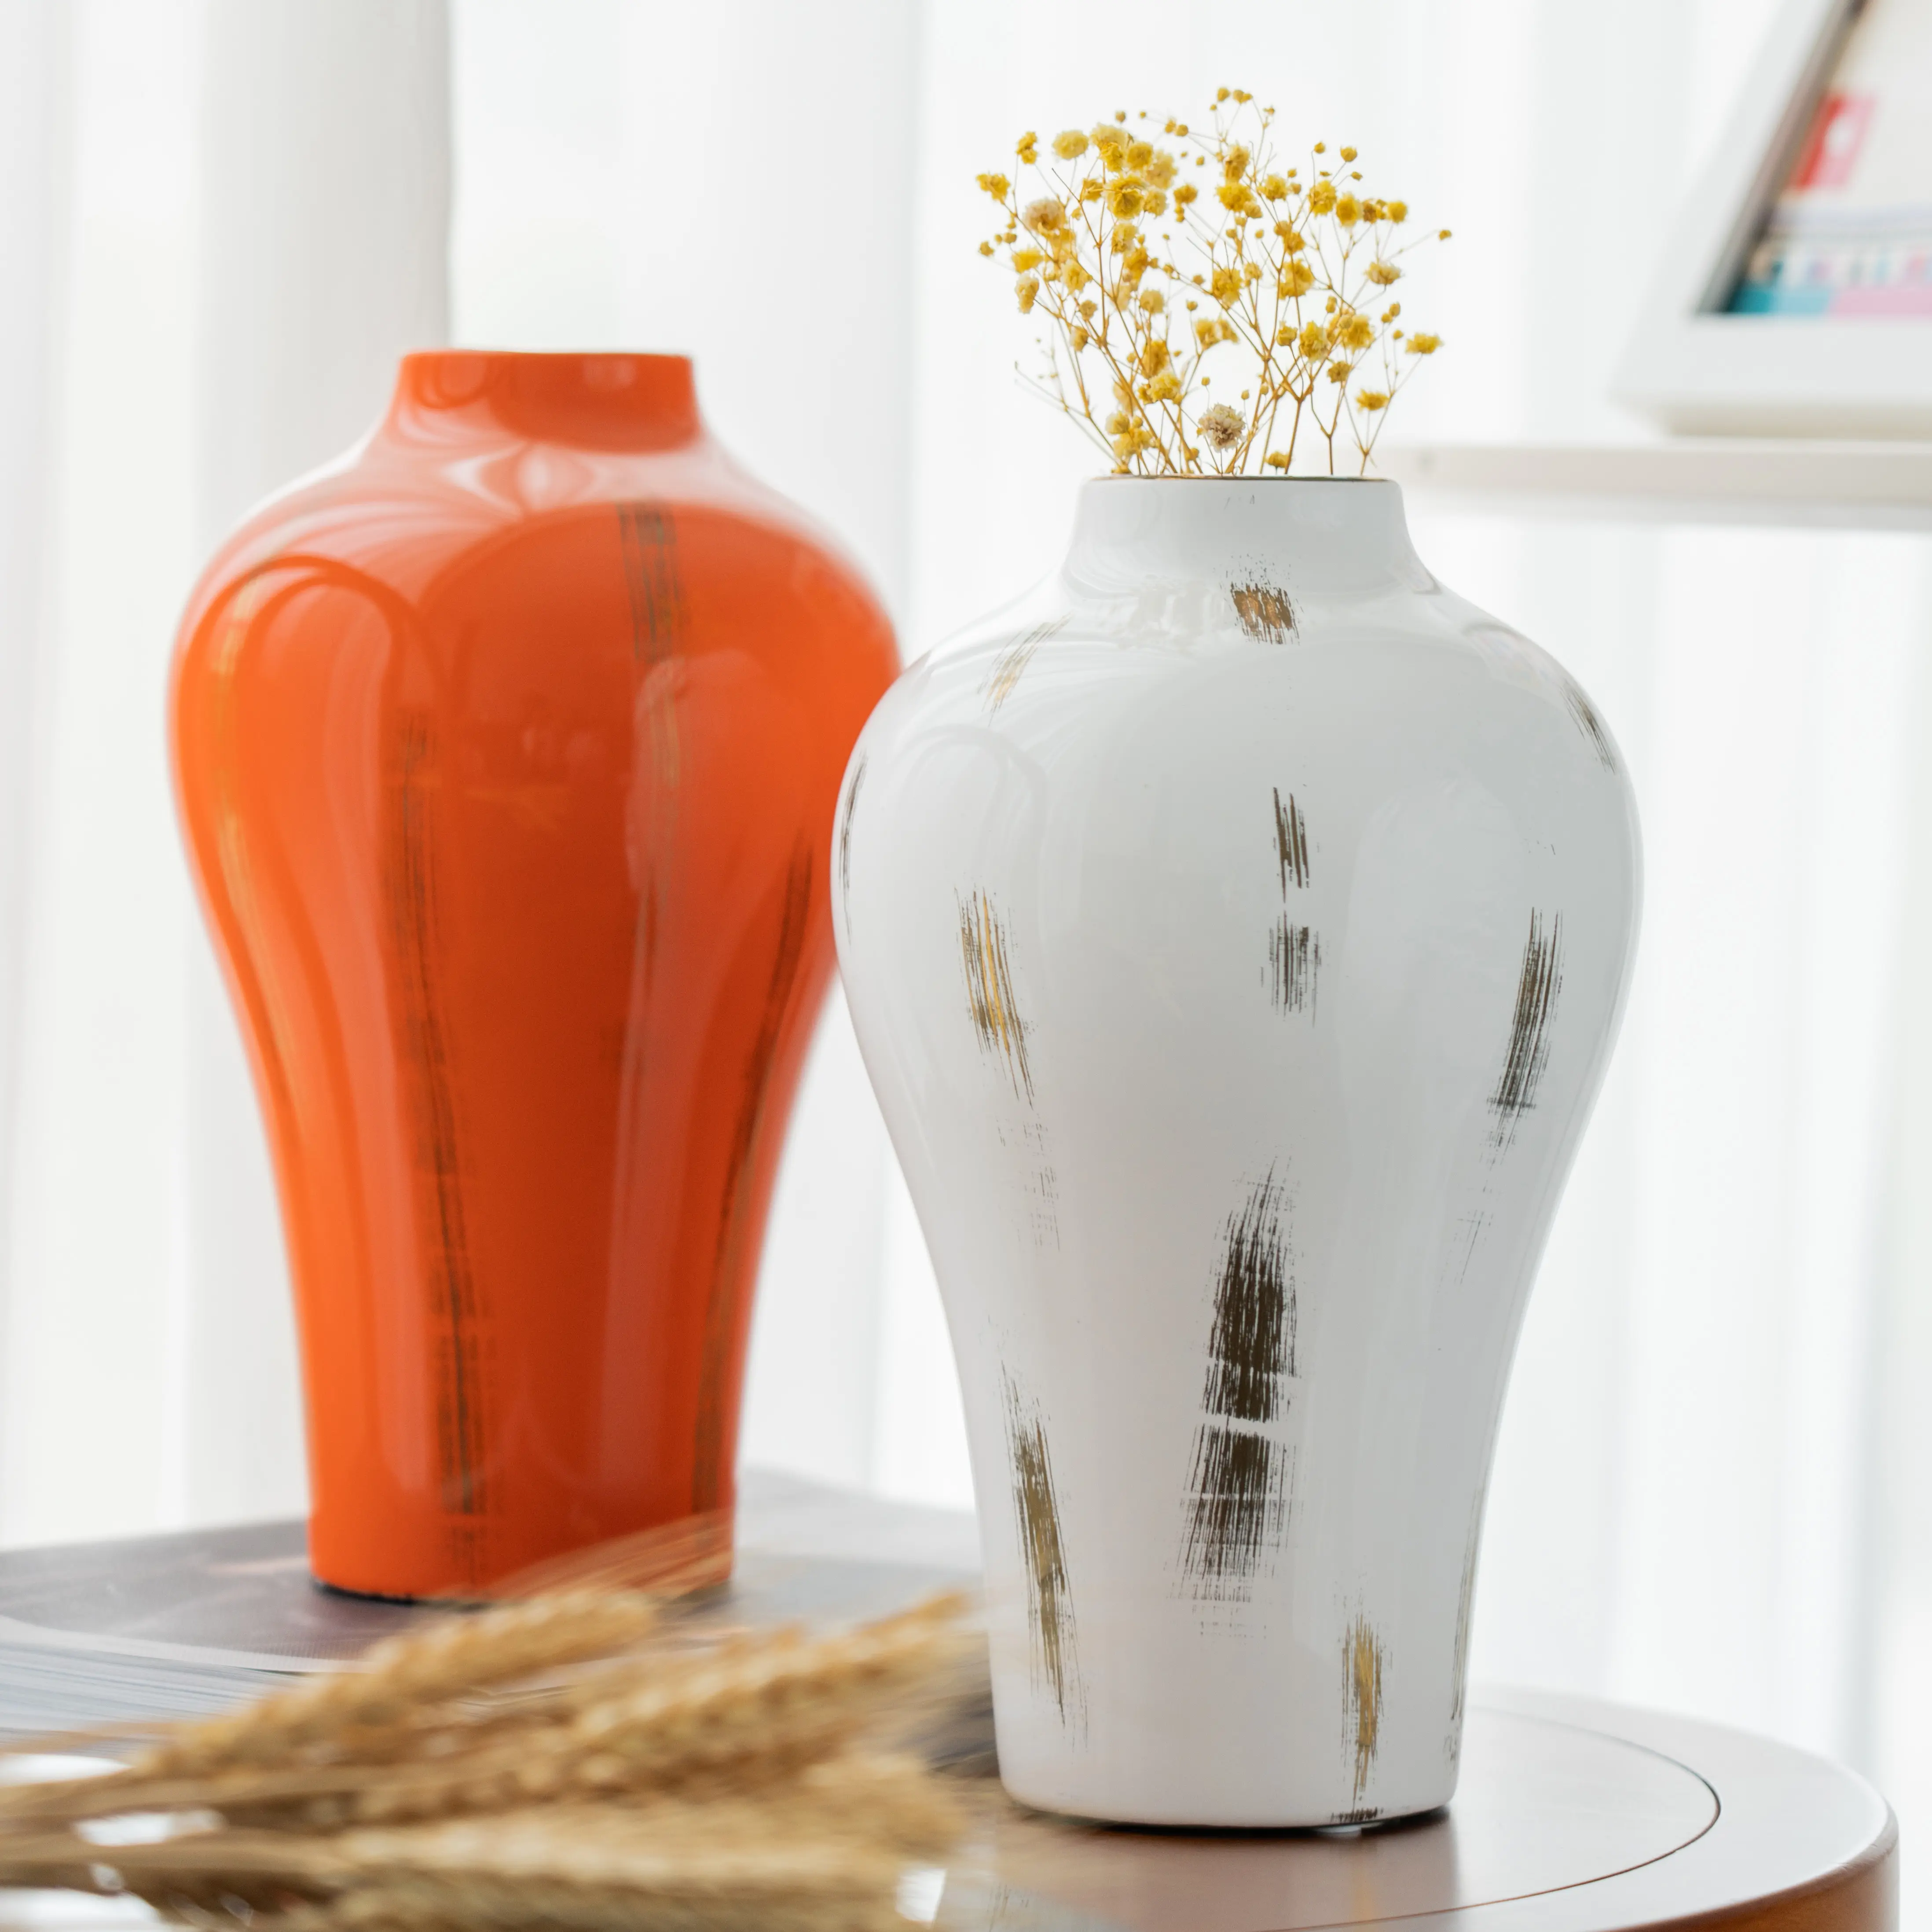 Lüks dekor el yapımı düğün için İskandinav altın kaplama bitki vazolar Modern seramik vazo çiçek